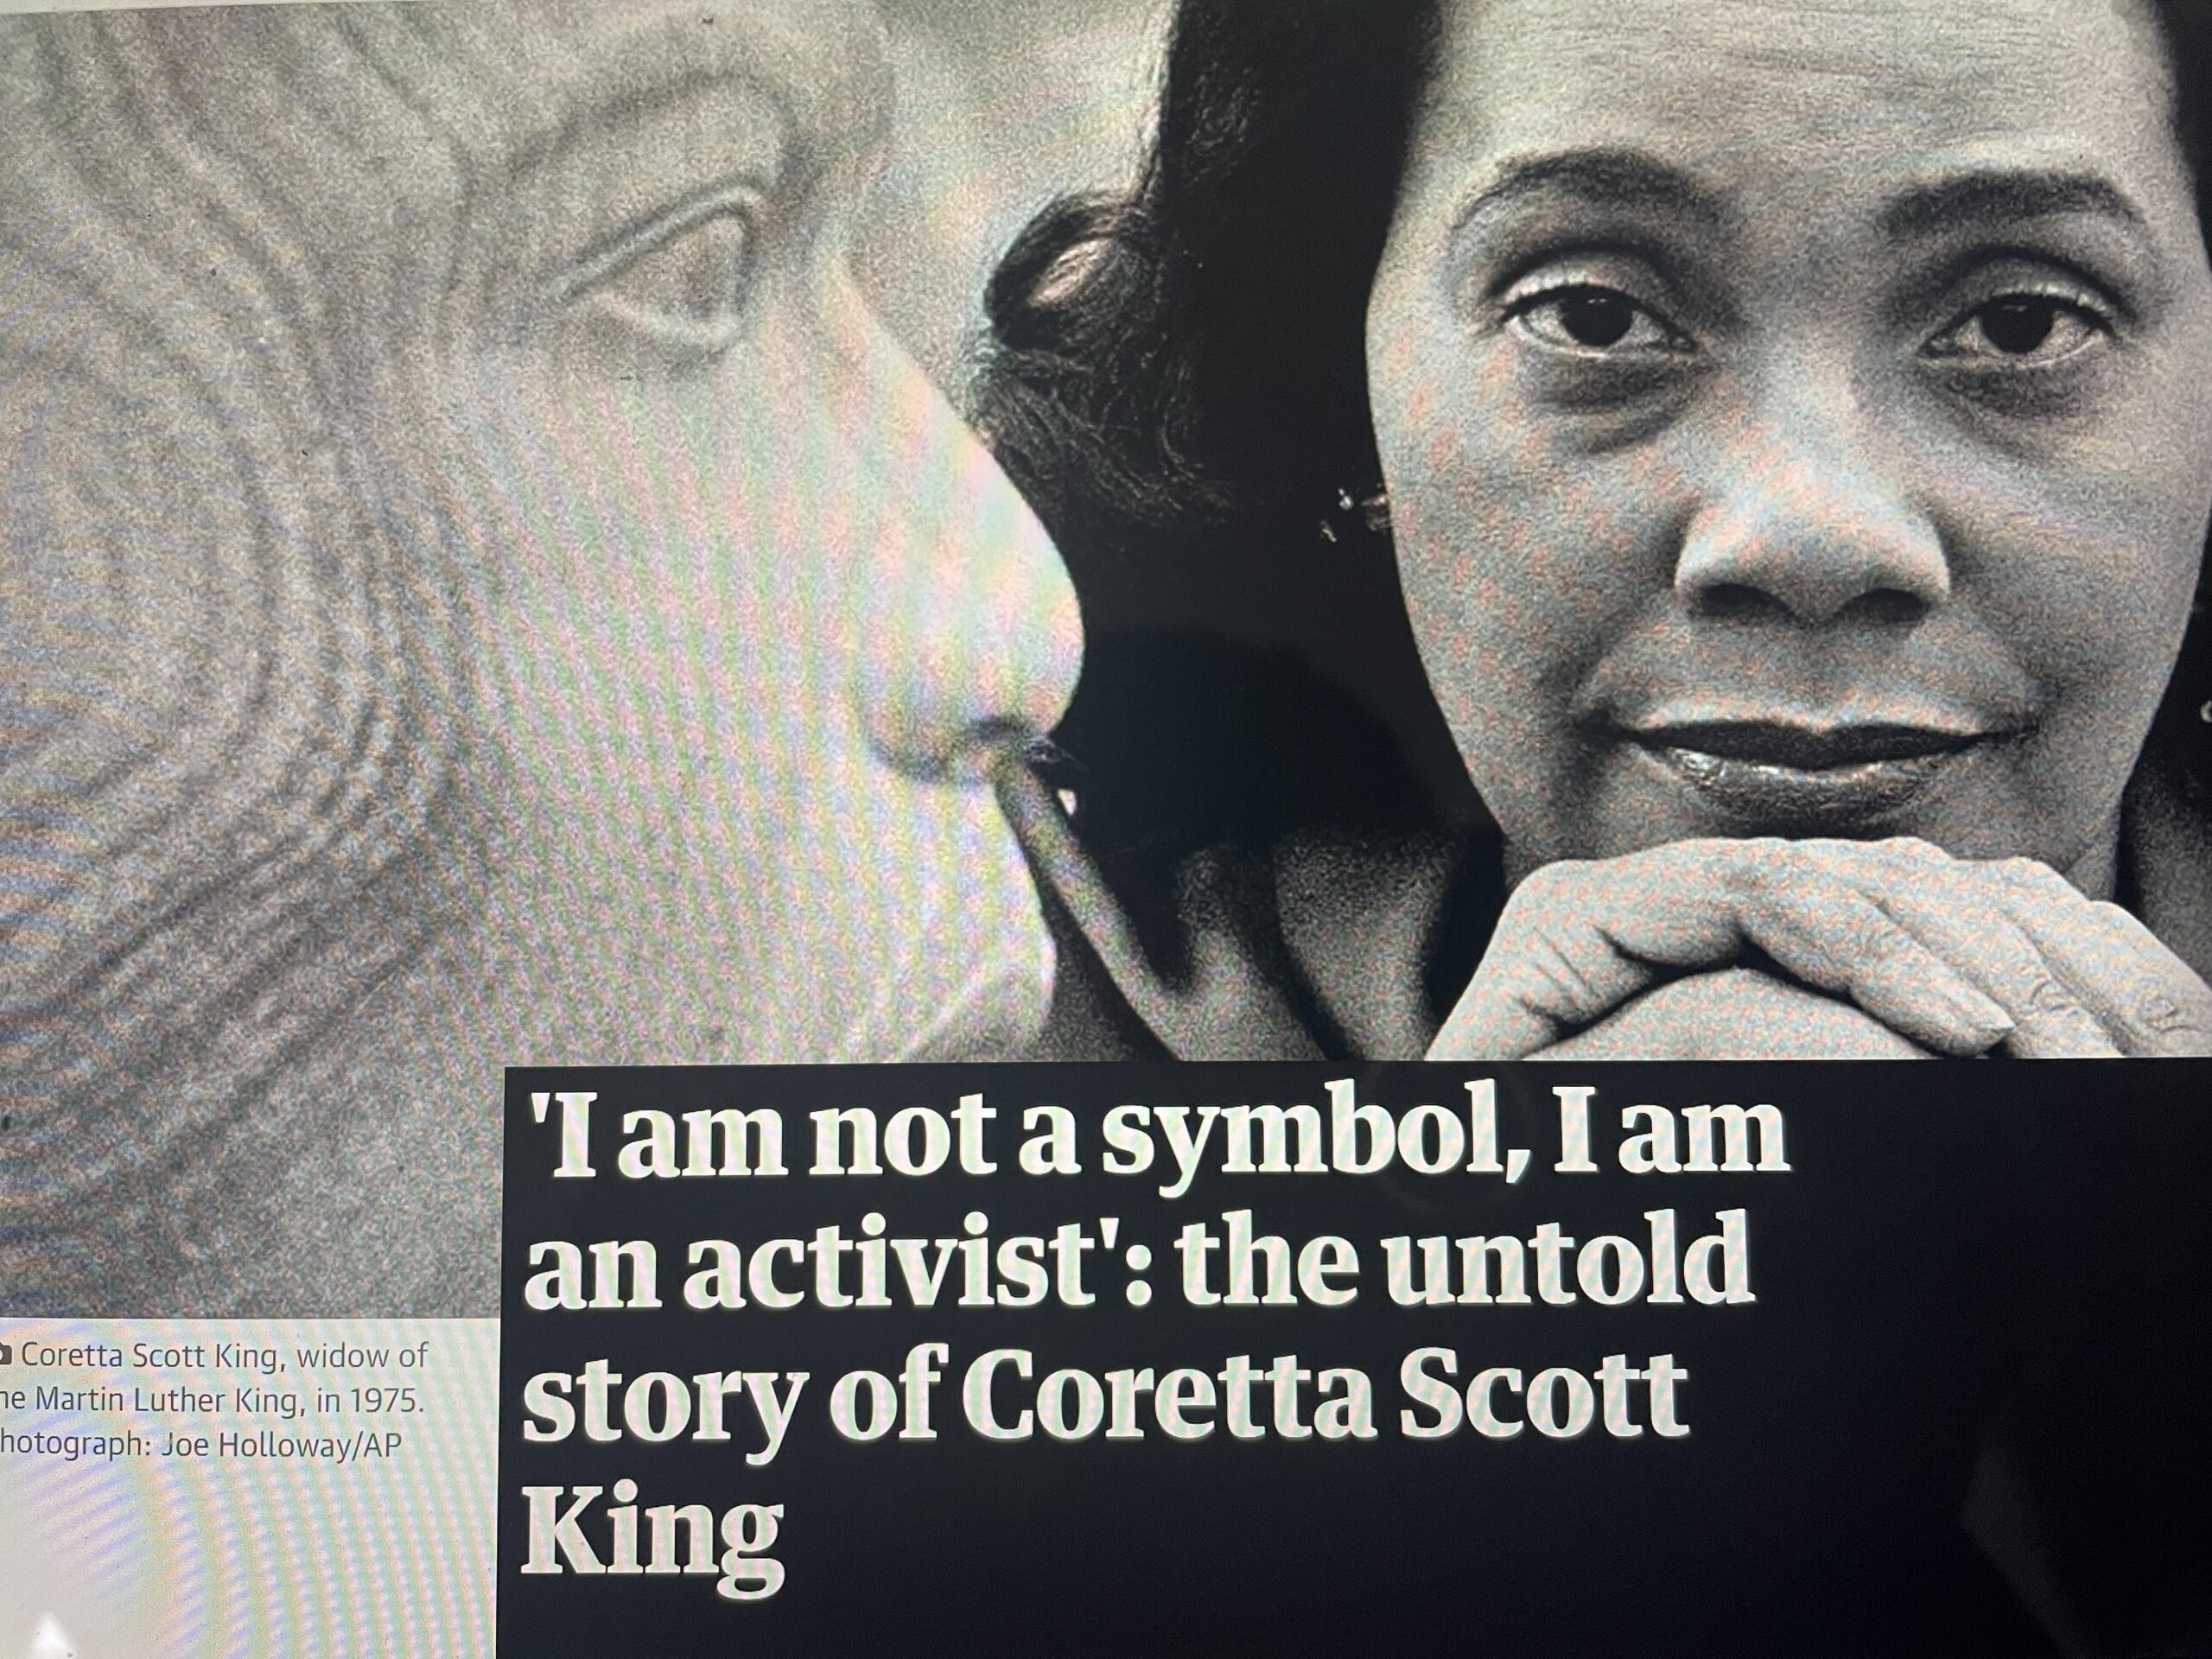 “I am not a symbol, I am an activist” Coretta Scott King